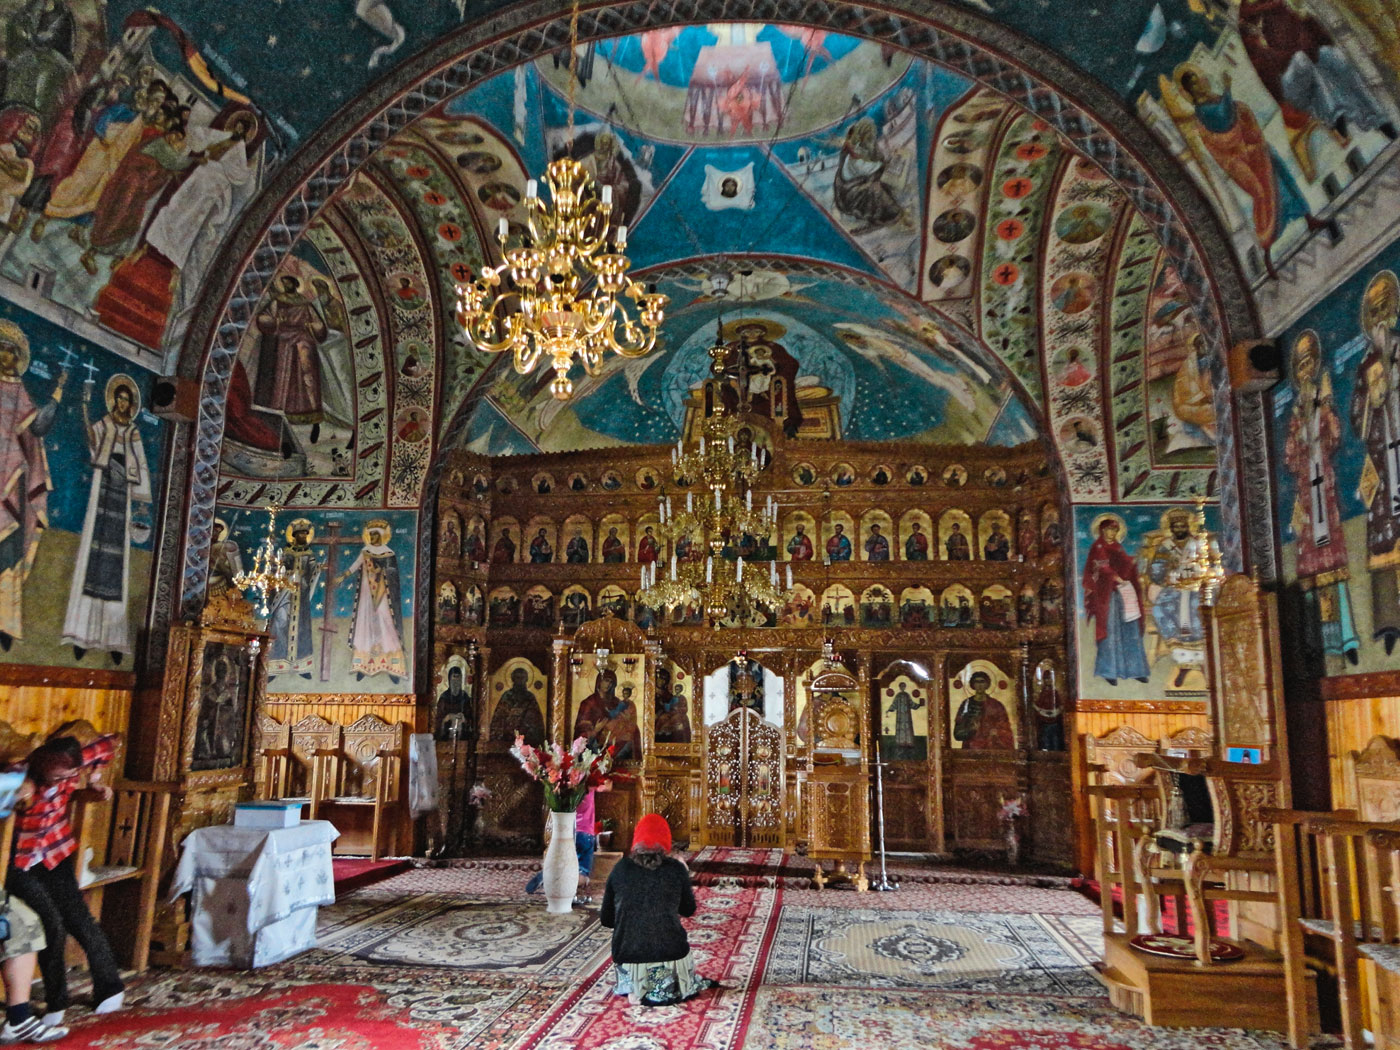 Relațiile dintre statele balcanice și Biserică s-au dezvoltat, iar în cele din urmă legăturile lor s-au înmuiat, dar au fost încă puternice în lumea ortodoxă.